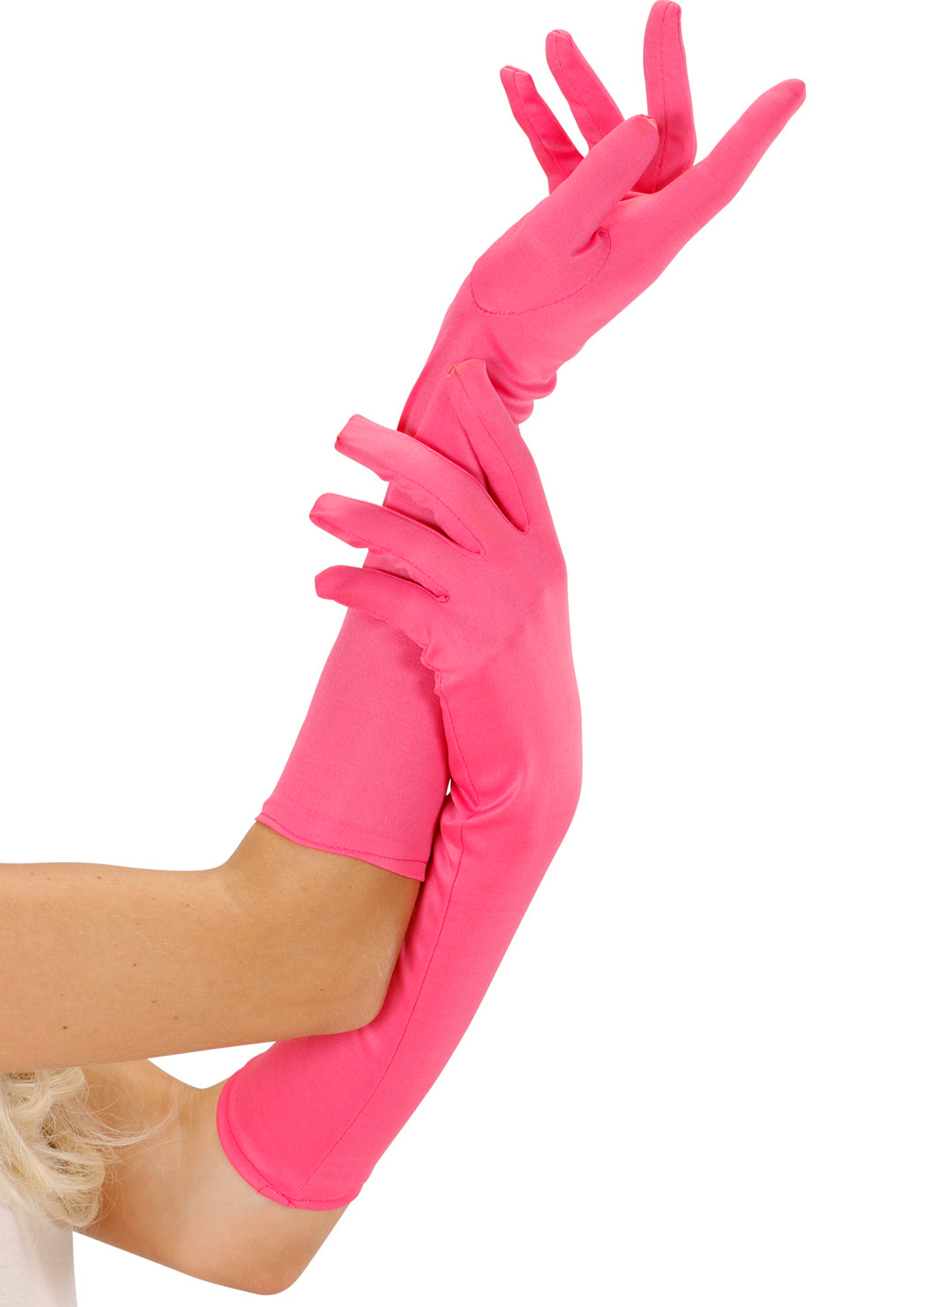 Купить розовые перчатки. Розовые перчатки. Длинные розовые перчатки. Розовые перчатки женские. Перчатки тканевые розовые.